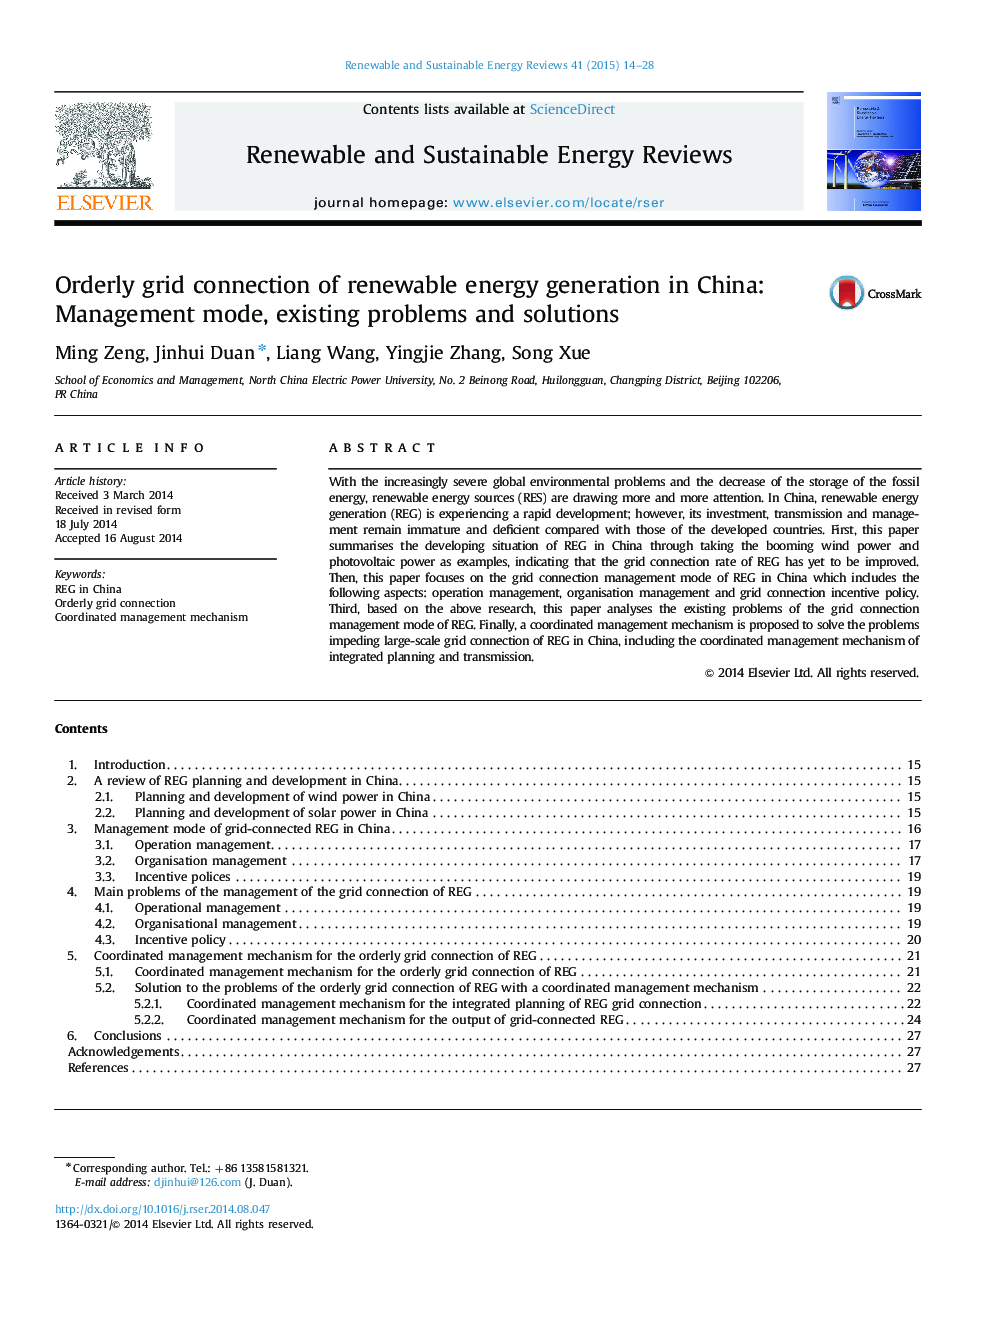 اتصال شبکه منظمی از تولید انرژی تجدید پذیر در چین: حالت مدیریت، مشکلات موجود و راه حل ها 